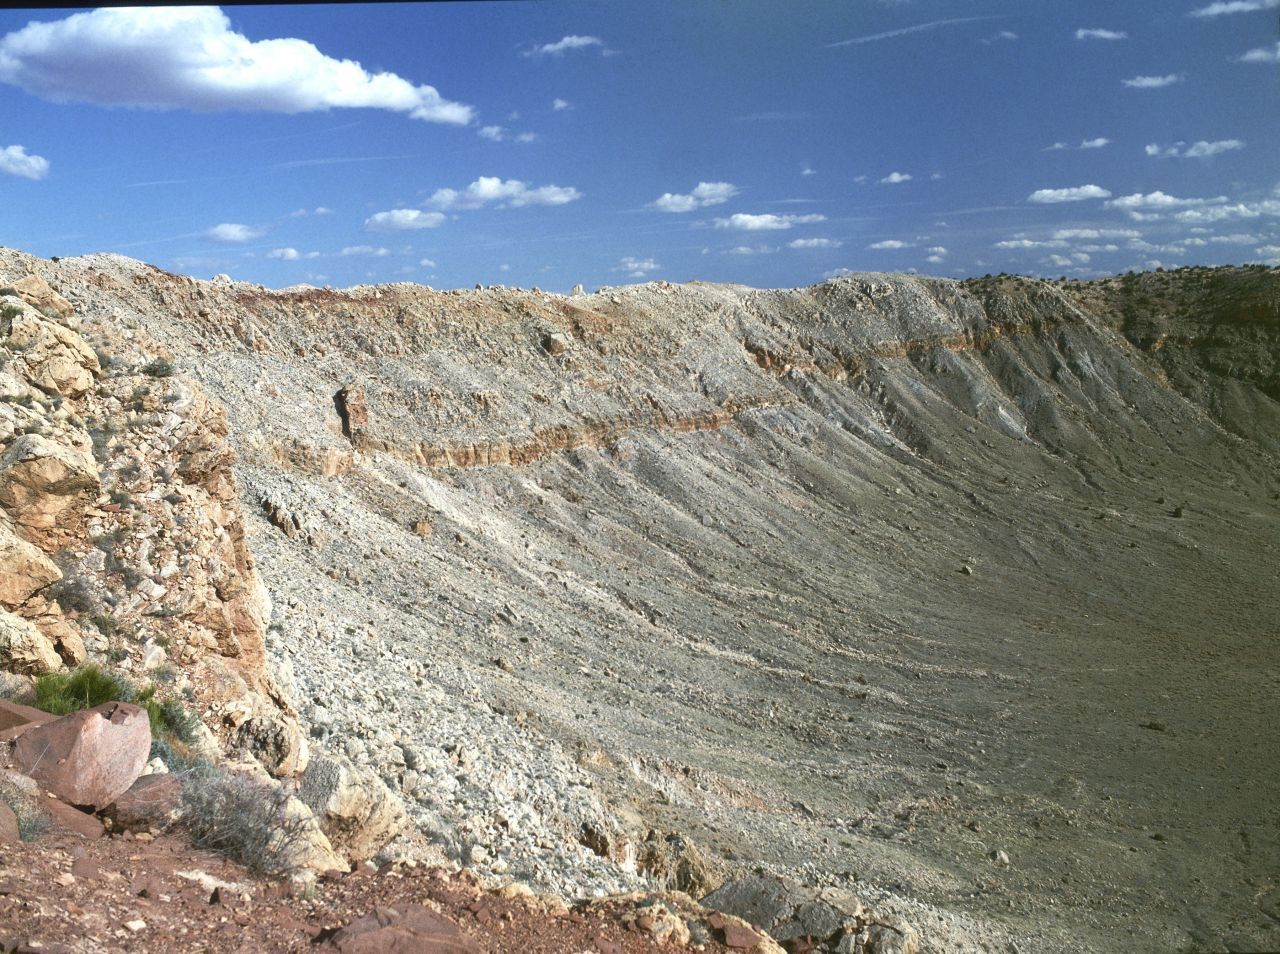 Nicht die größte, aber wohl die beeindruckendste Einschlagstelle eines Meteoriten: Der Barringer-Krater in Arizona ist so gut erhalten, weil er "nur" 50.000 Jahre alt ist. Sein Durchmesser beträgt etwa 1,2 Kilometer.